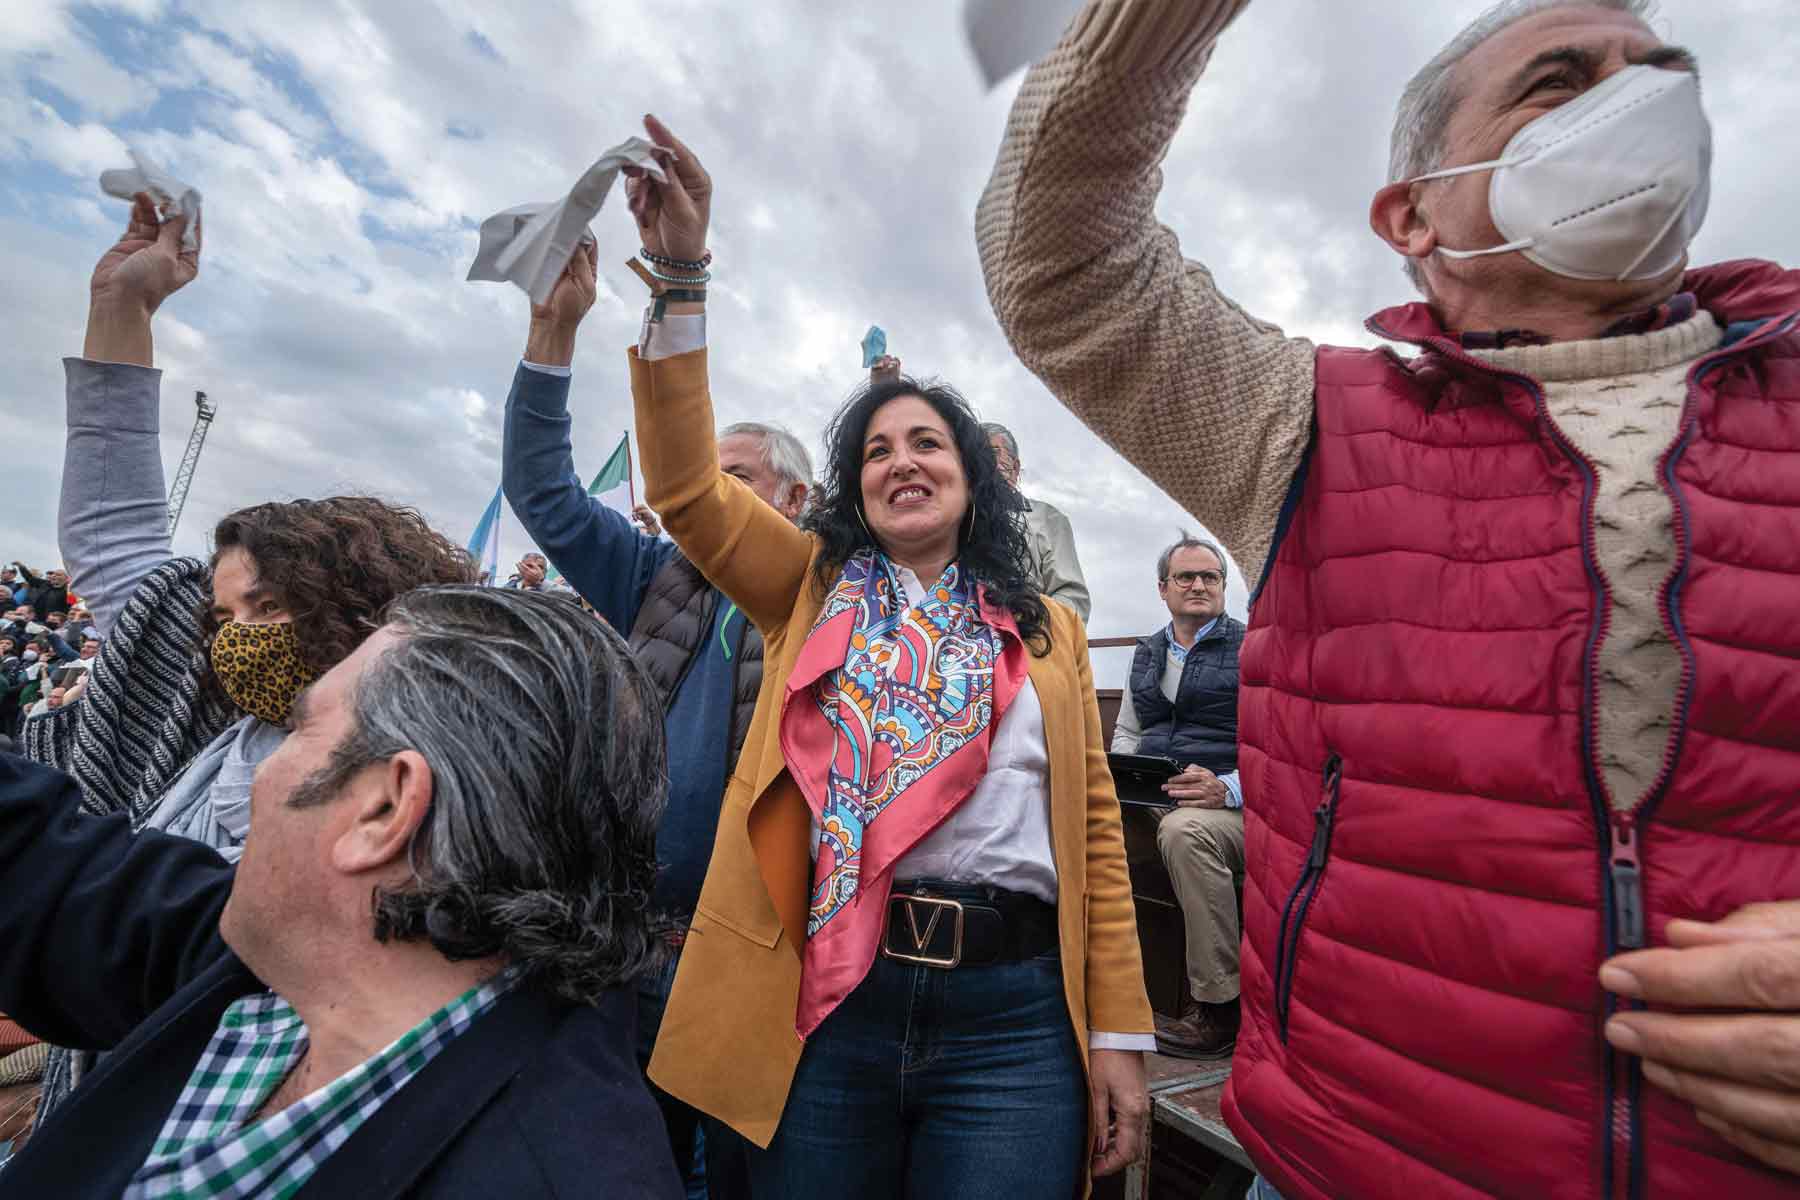 Spectators wave white handkerchiefs to celebrate the death of a bull in Sanlucar la Mayor, Spain